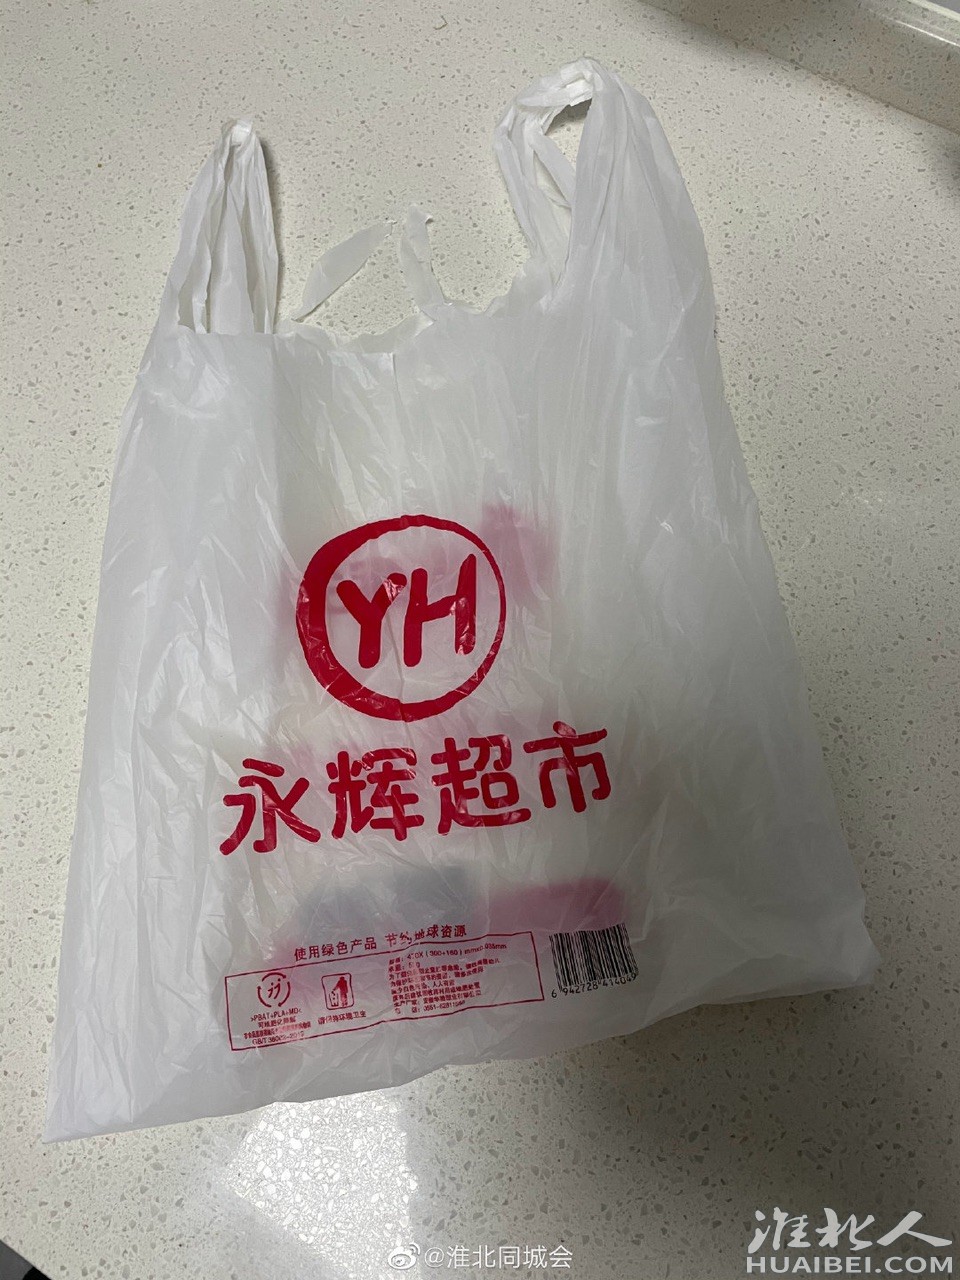 永辉超市的购物袋6毛钱一个,再不努力塑料袋都买不起了